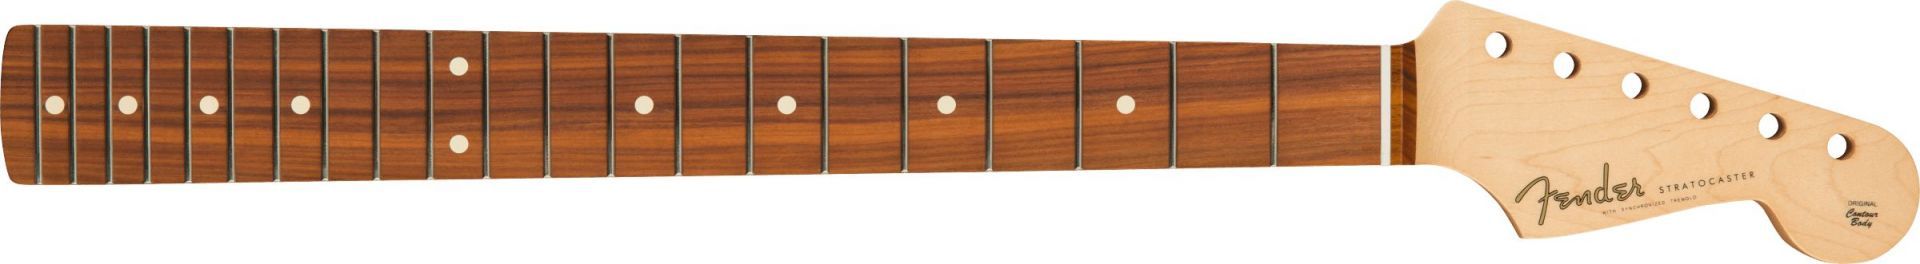 Fender Classic Player 60s Stratocaster Neck 21 Med Jumbo Frets Pau Ferro C Shape Natural